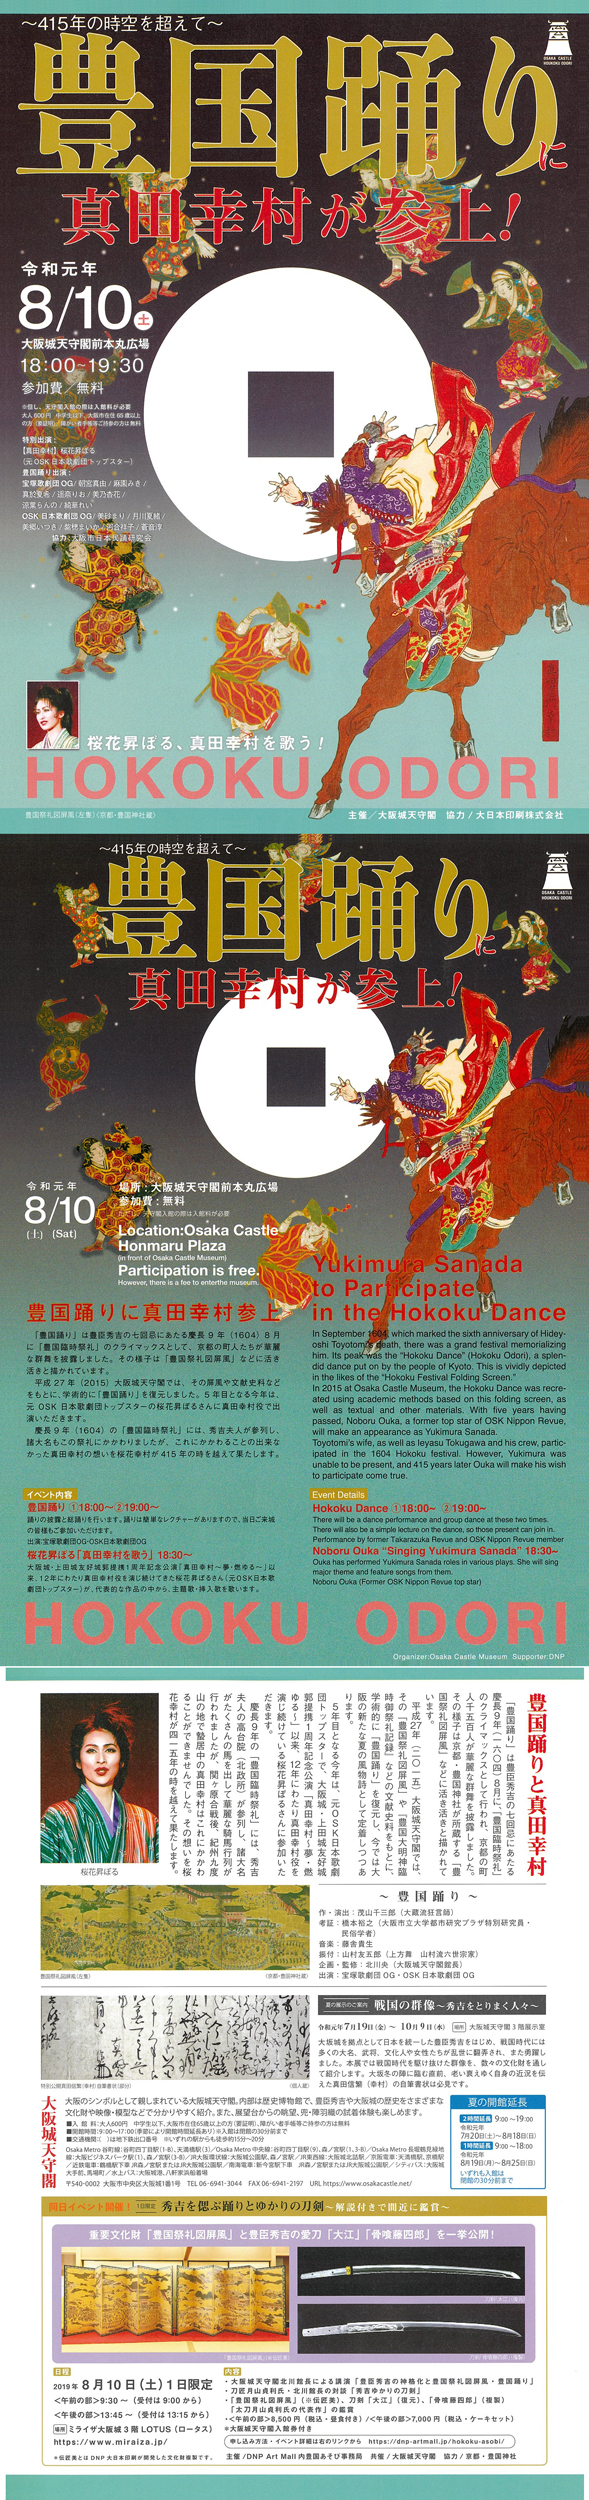 「豊国踊りに真田幸村が参上！」を開催します